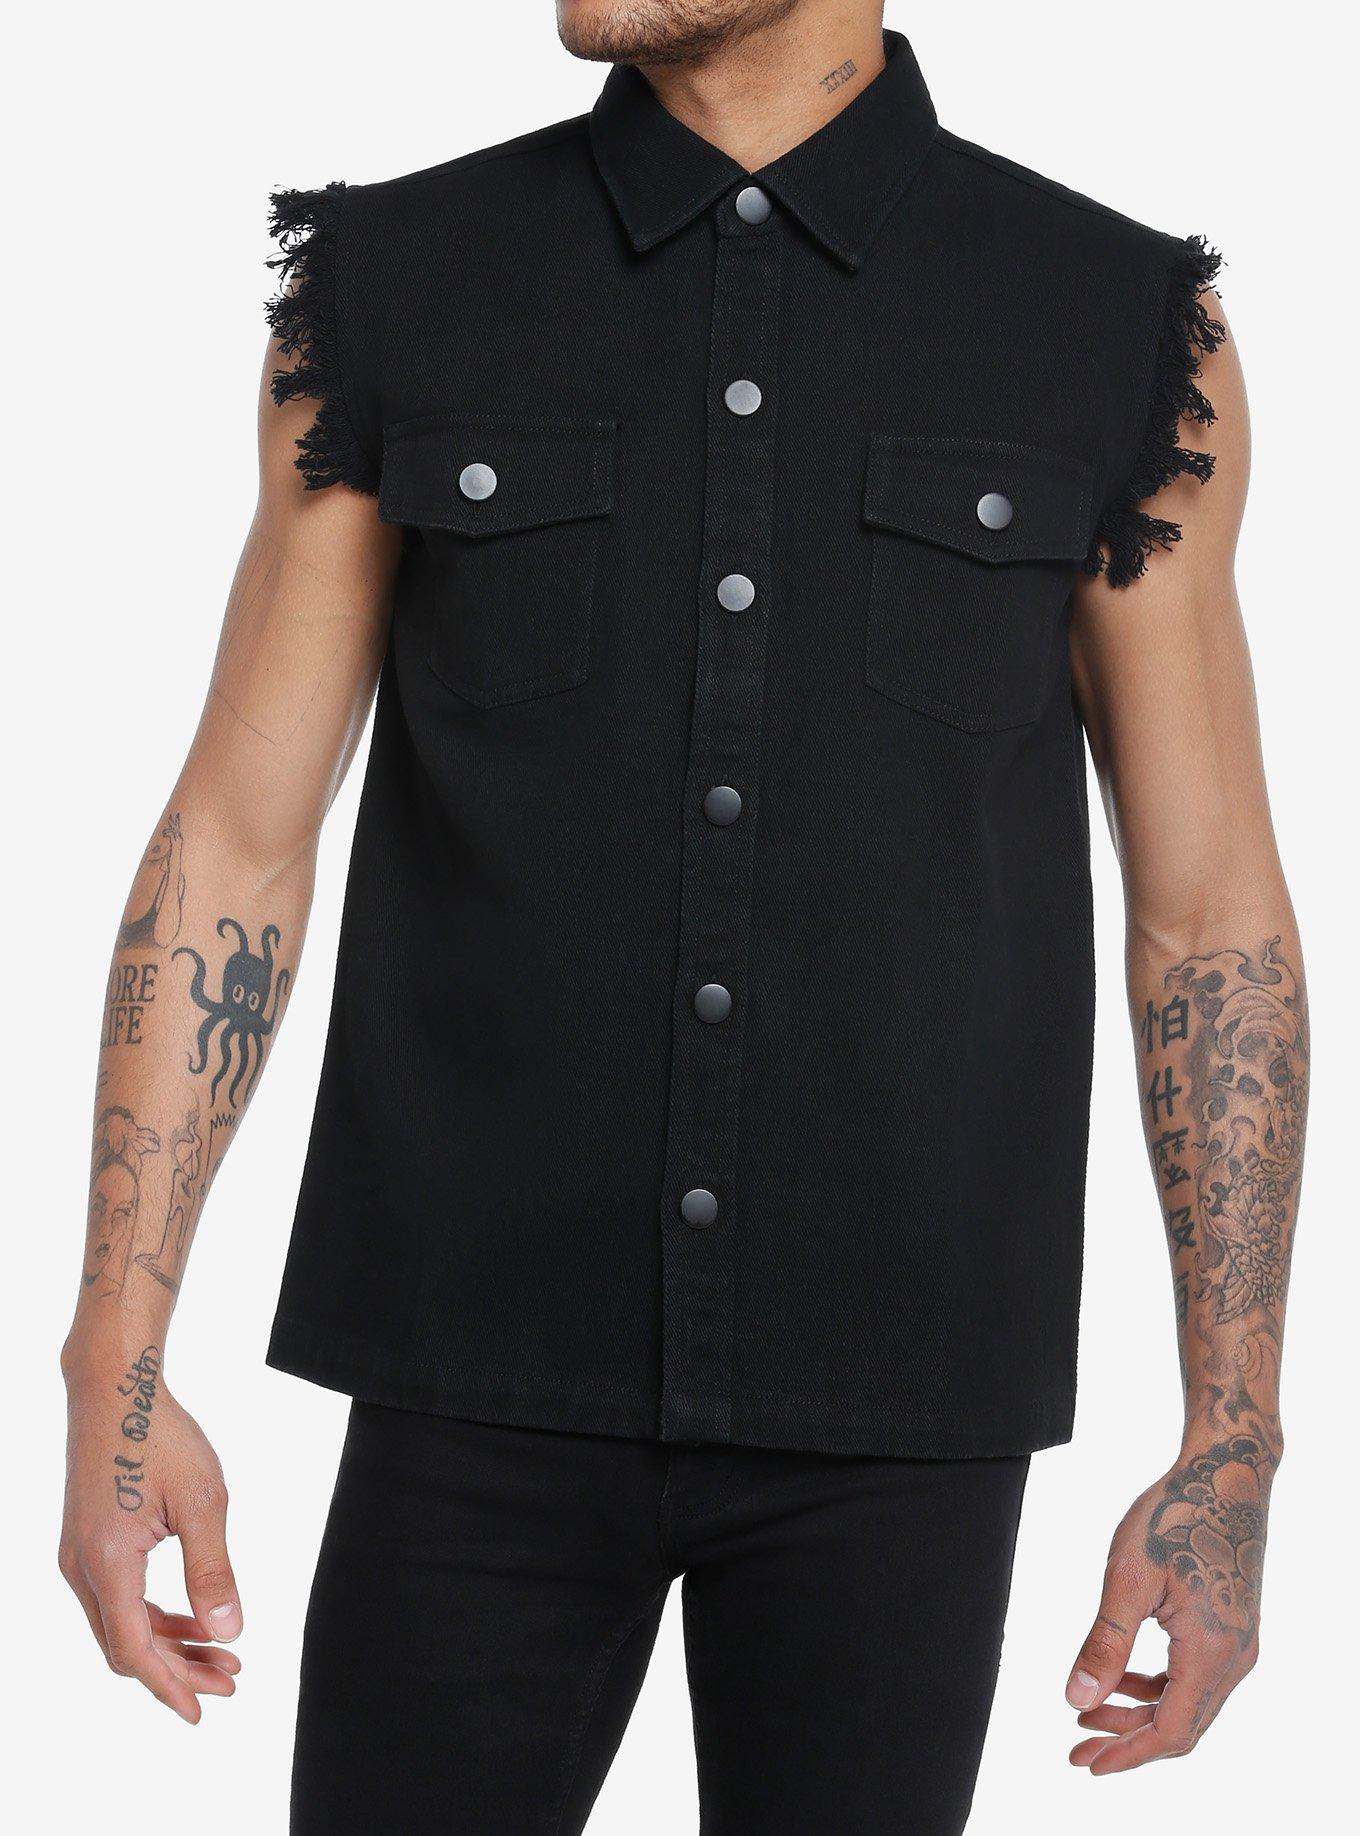 Buy Juice Wrld Black Studded Vest